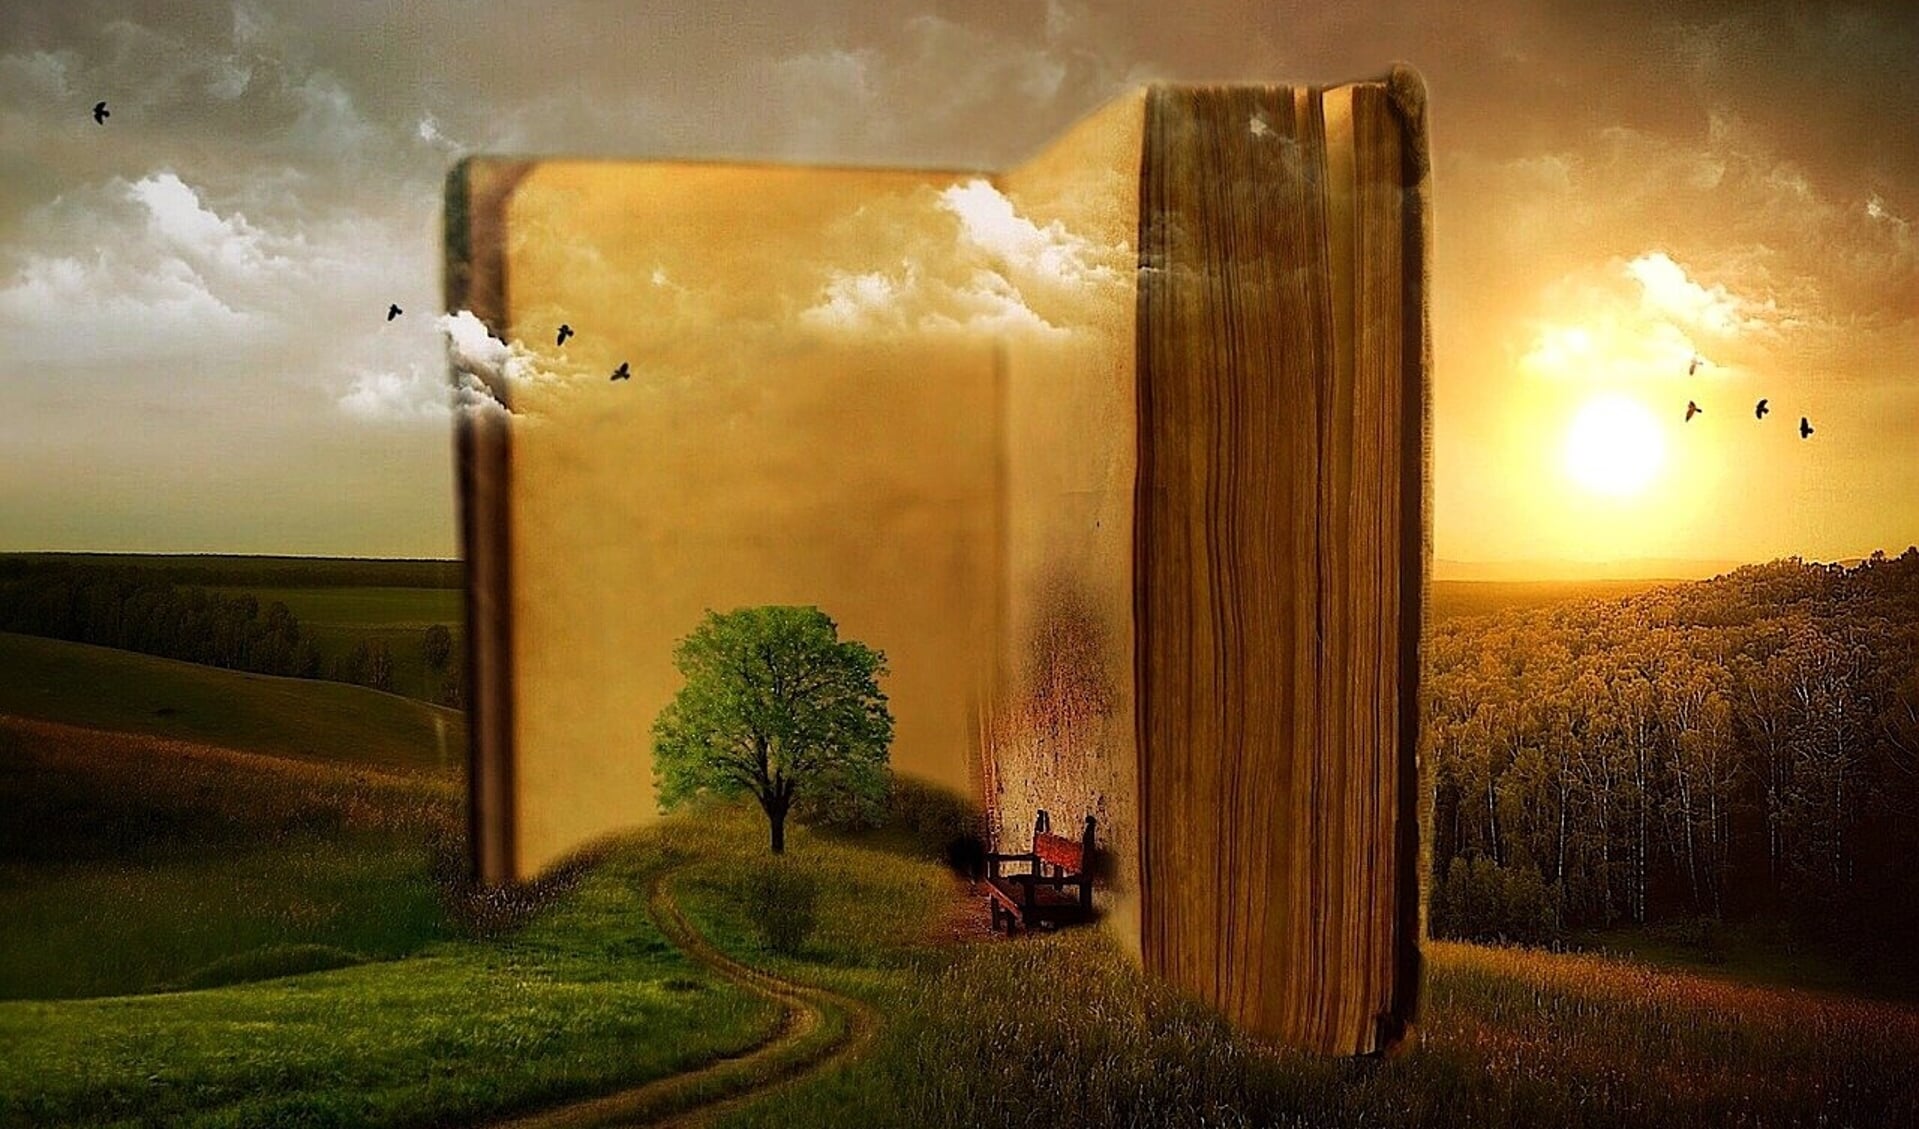 Via een boek duik je in een andere wereld.